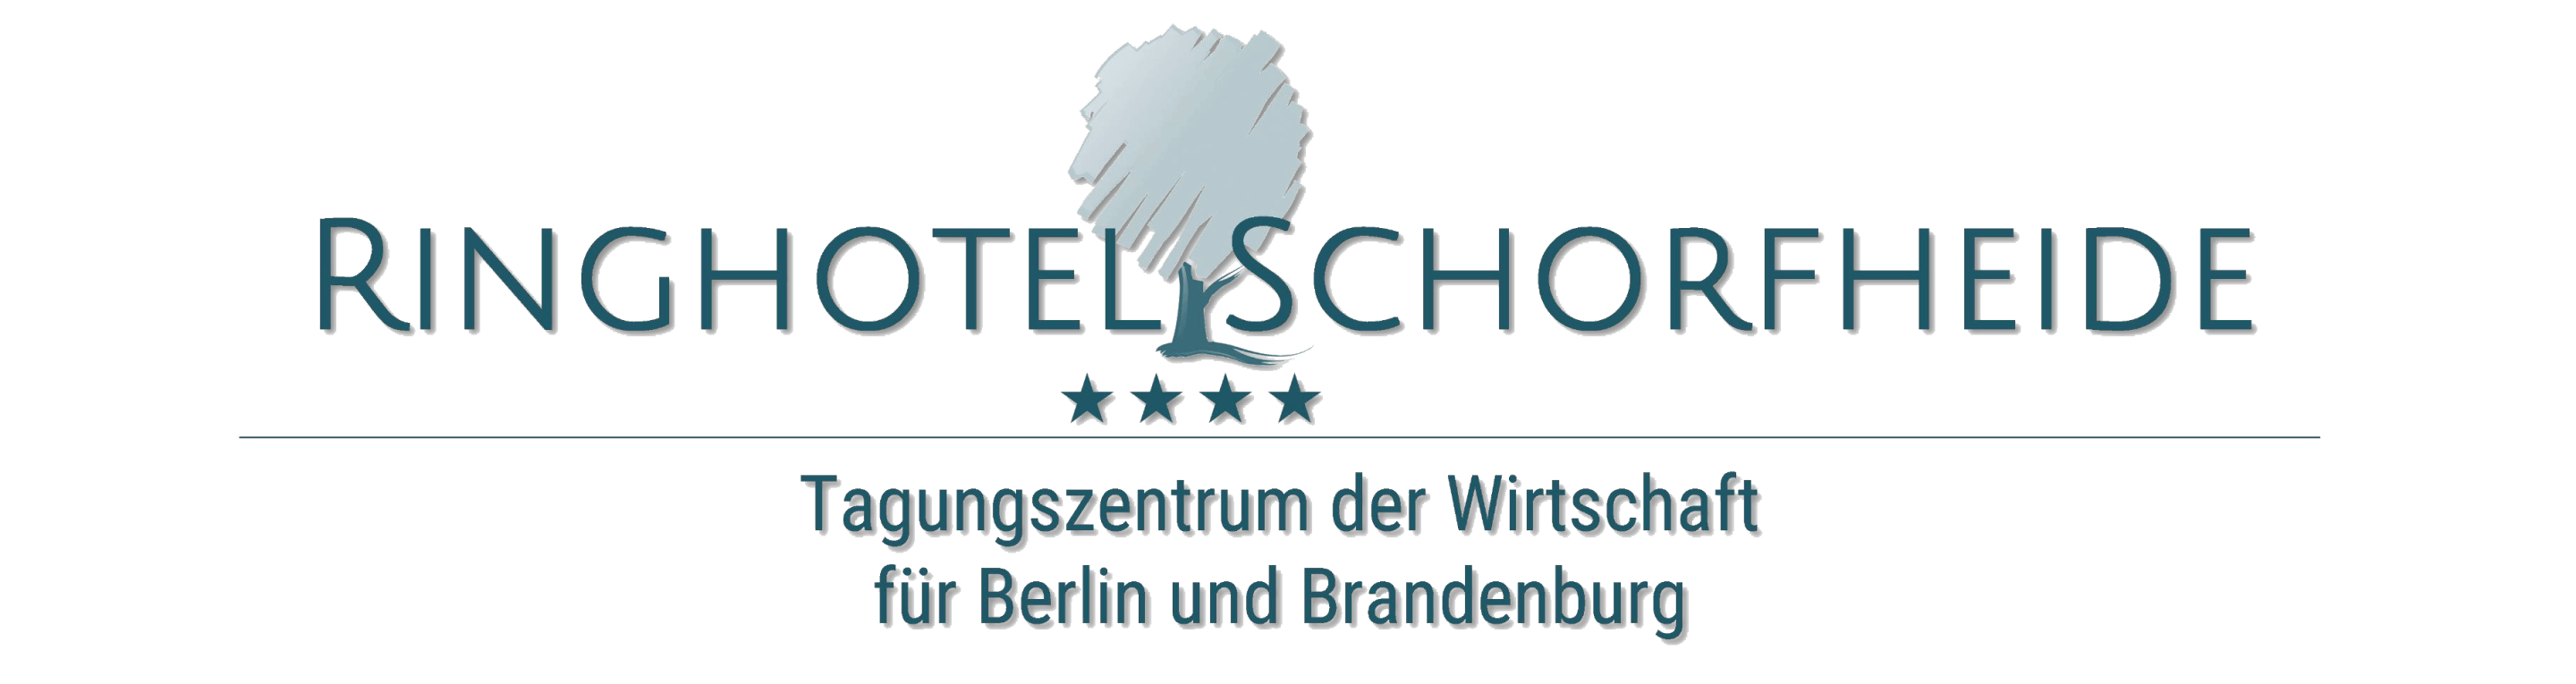 Logo Ringhotel Schorfheide - Tagungszentrum der Wirtschaft Schorfheider Dienstleistungs GmbH